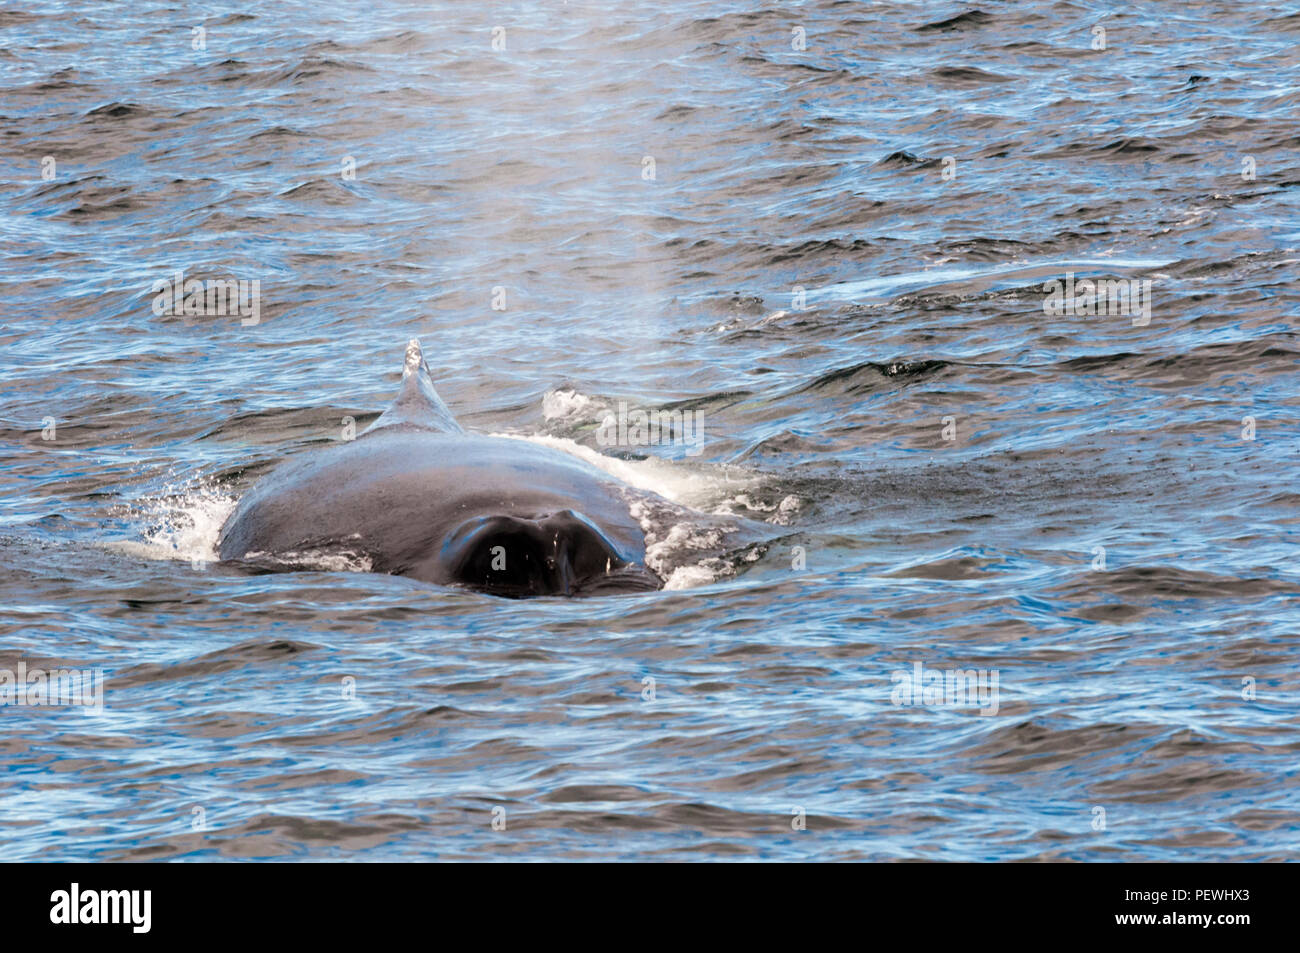 Blowhole of Humpback whale, Megaptera novaeangliae, off Newfoundland, Canada. Stock Photo